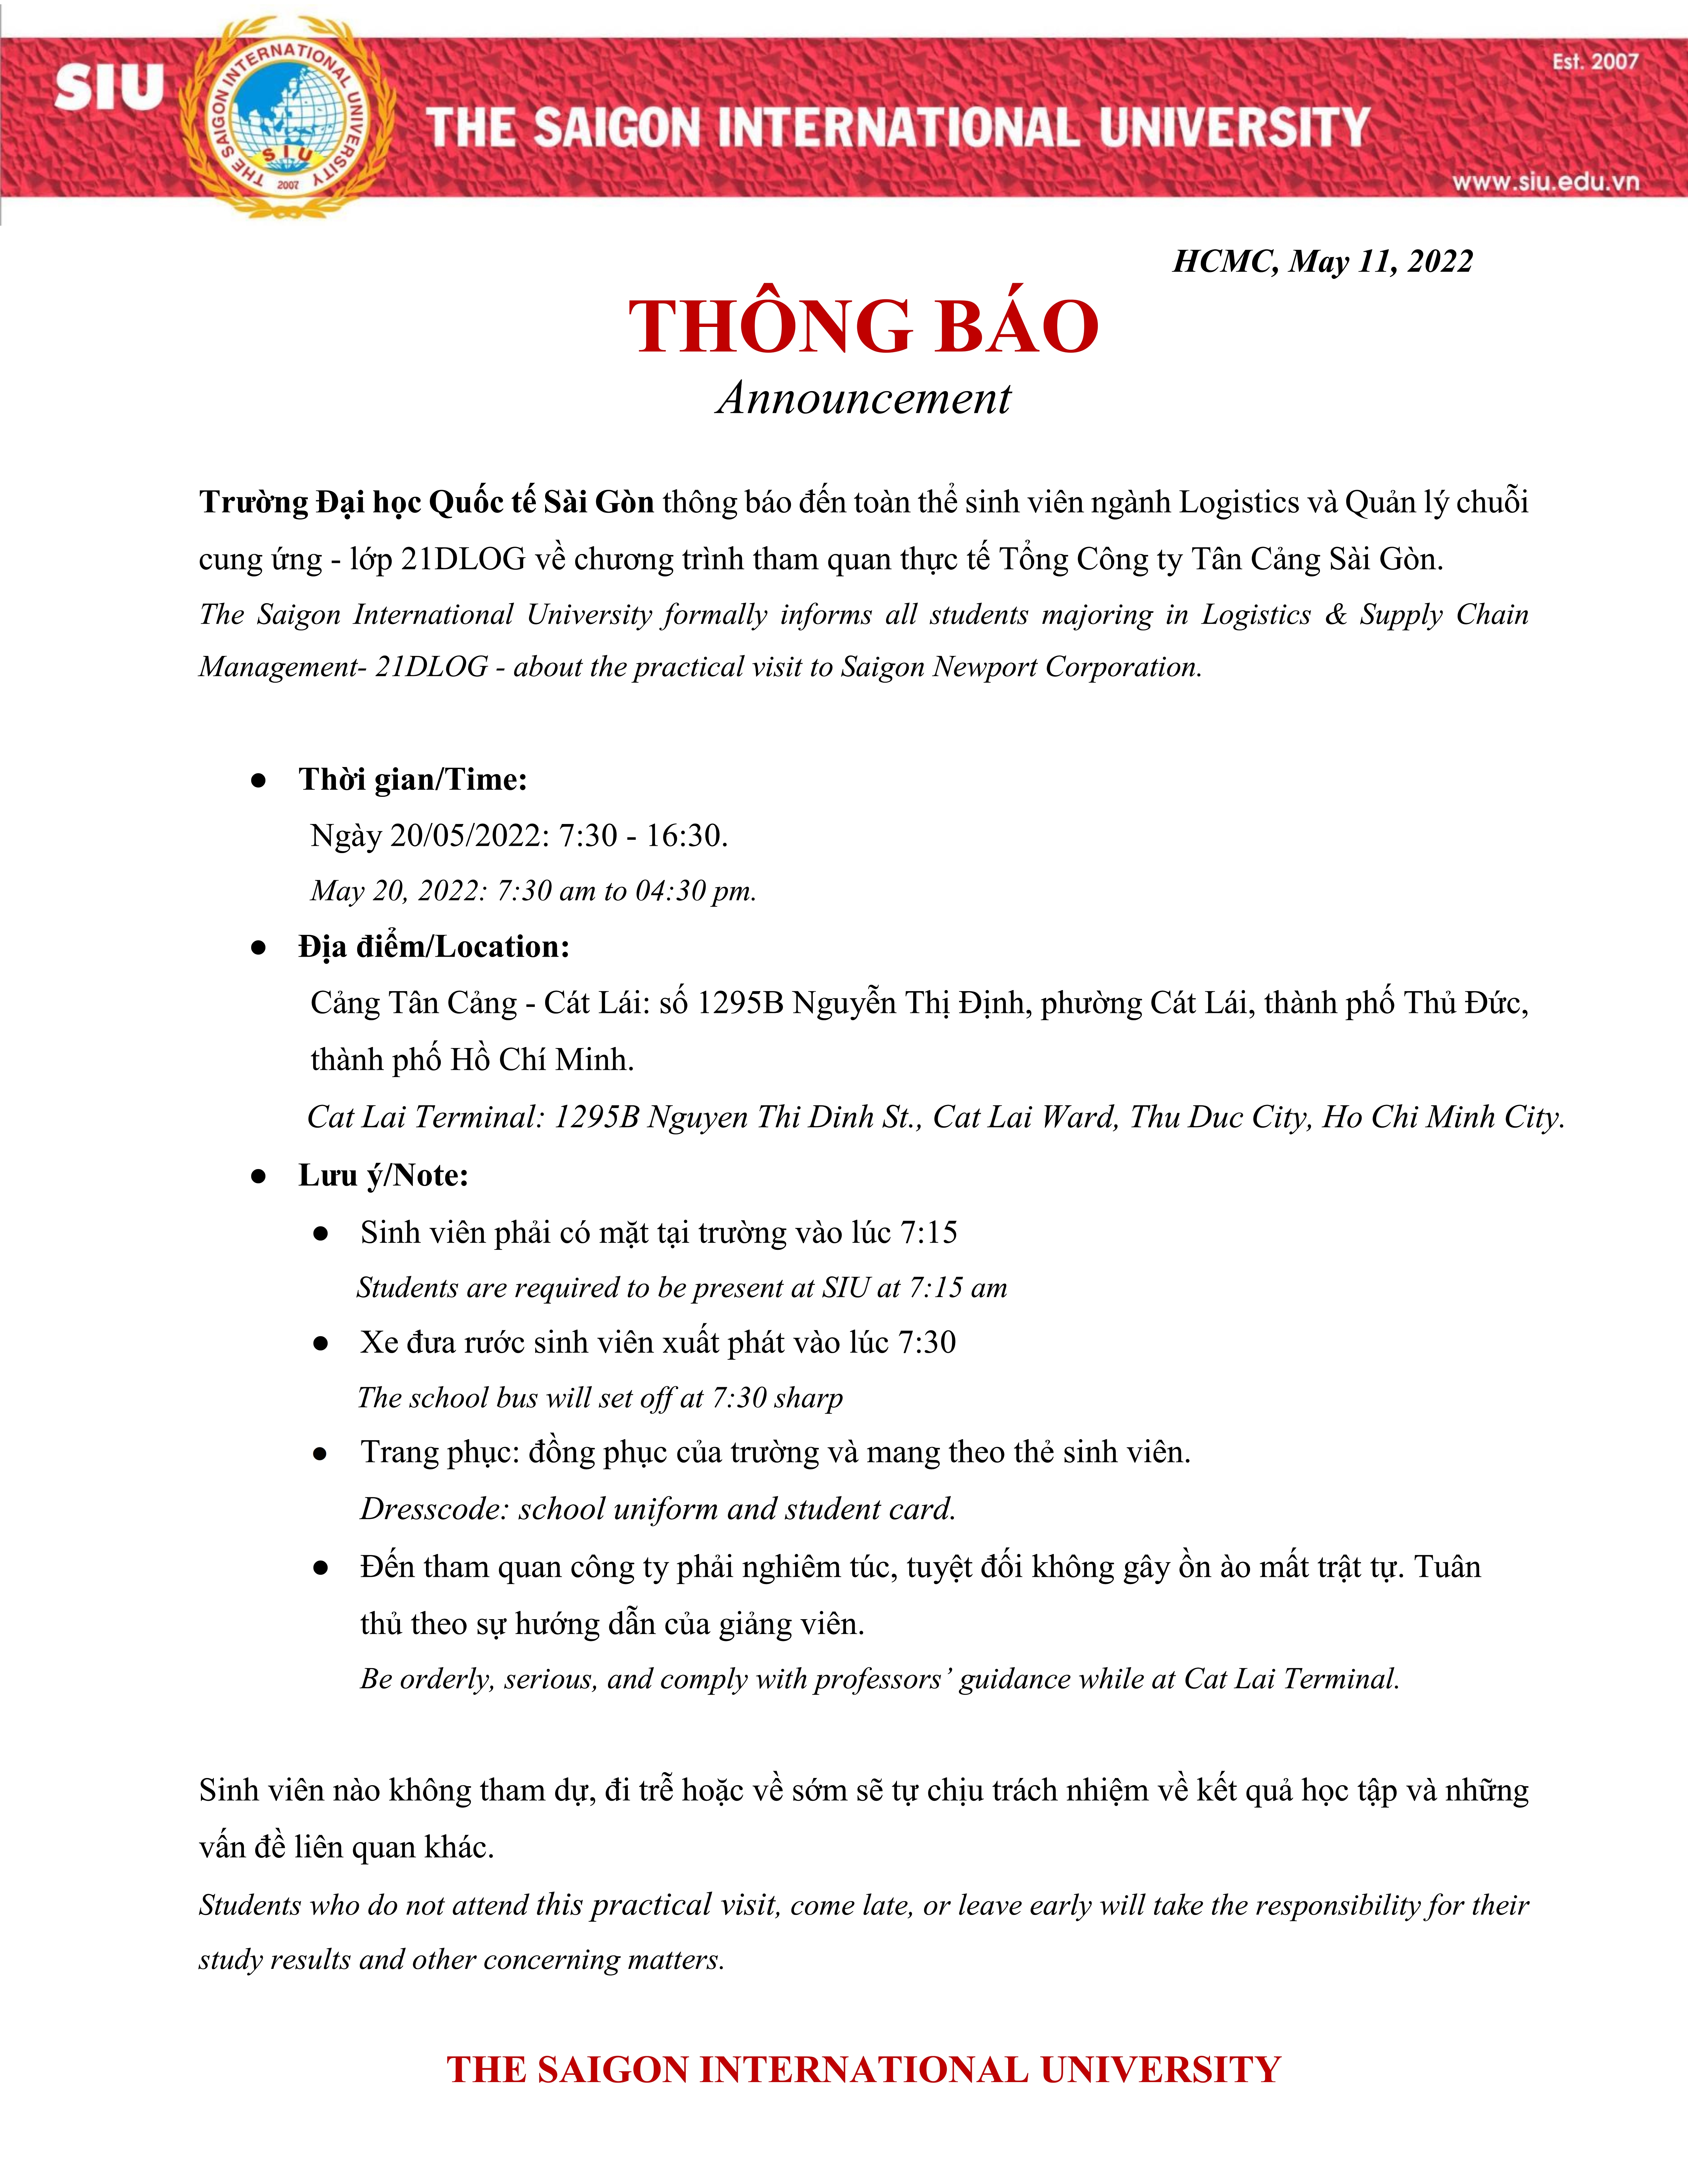 Tham quan thực tế Tổng Công ty Tân Cảng Sài Gòn 20-05-2022